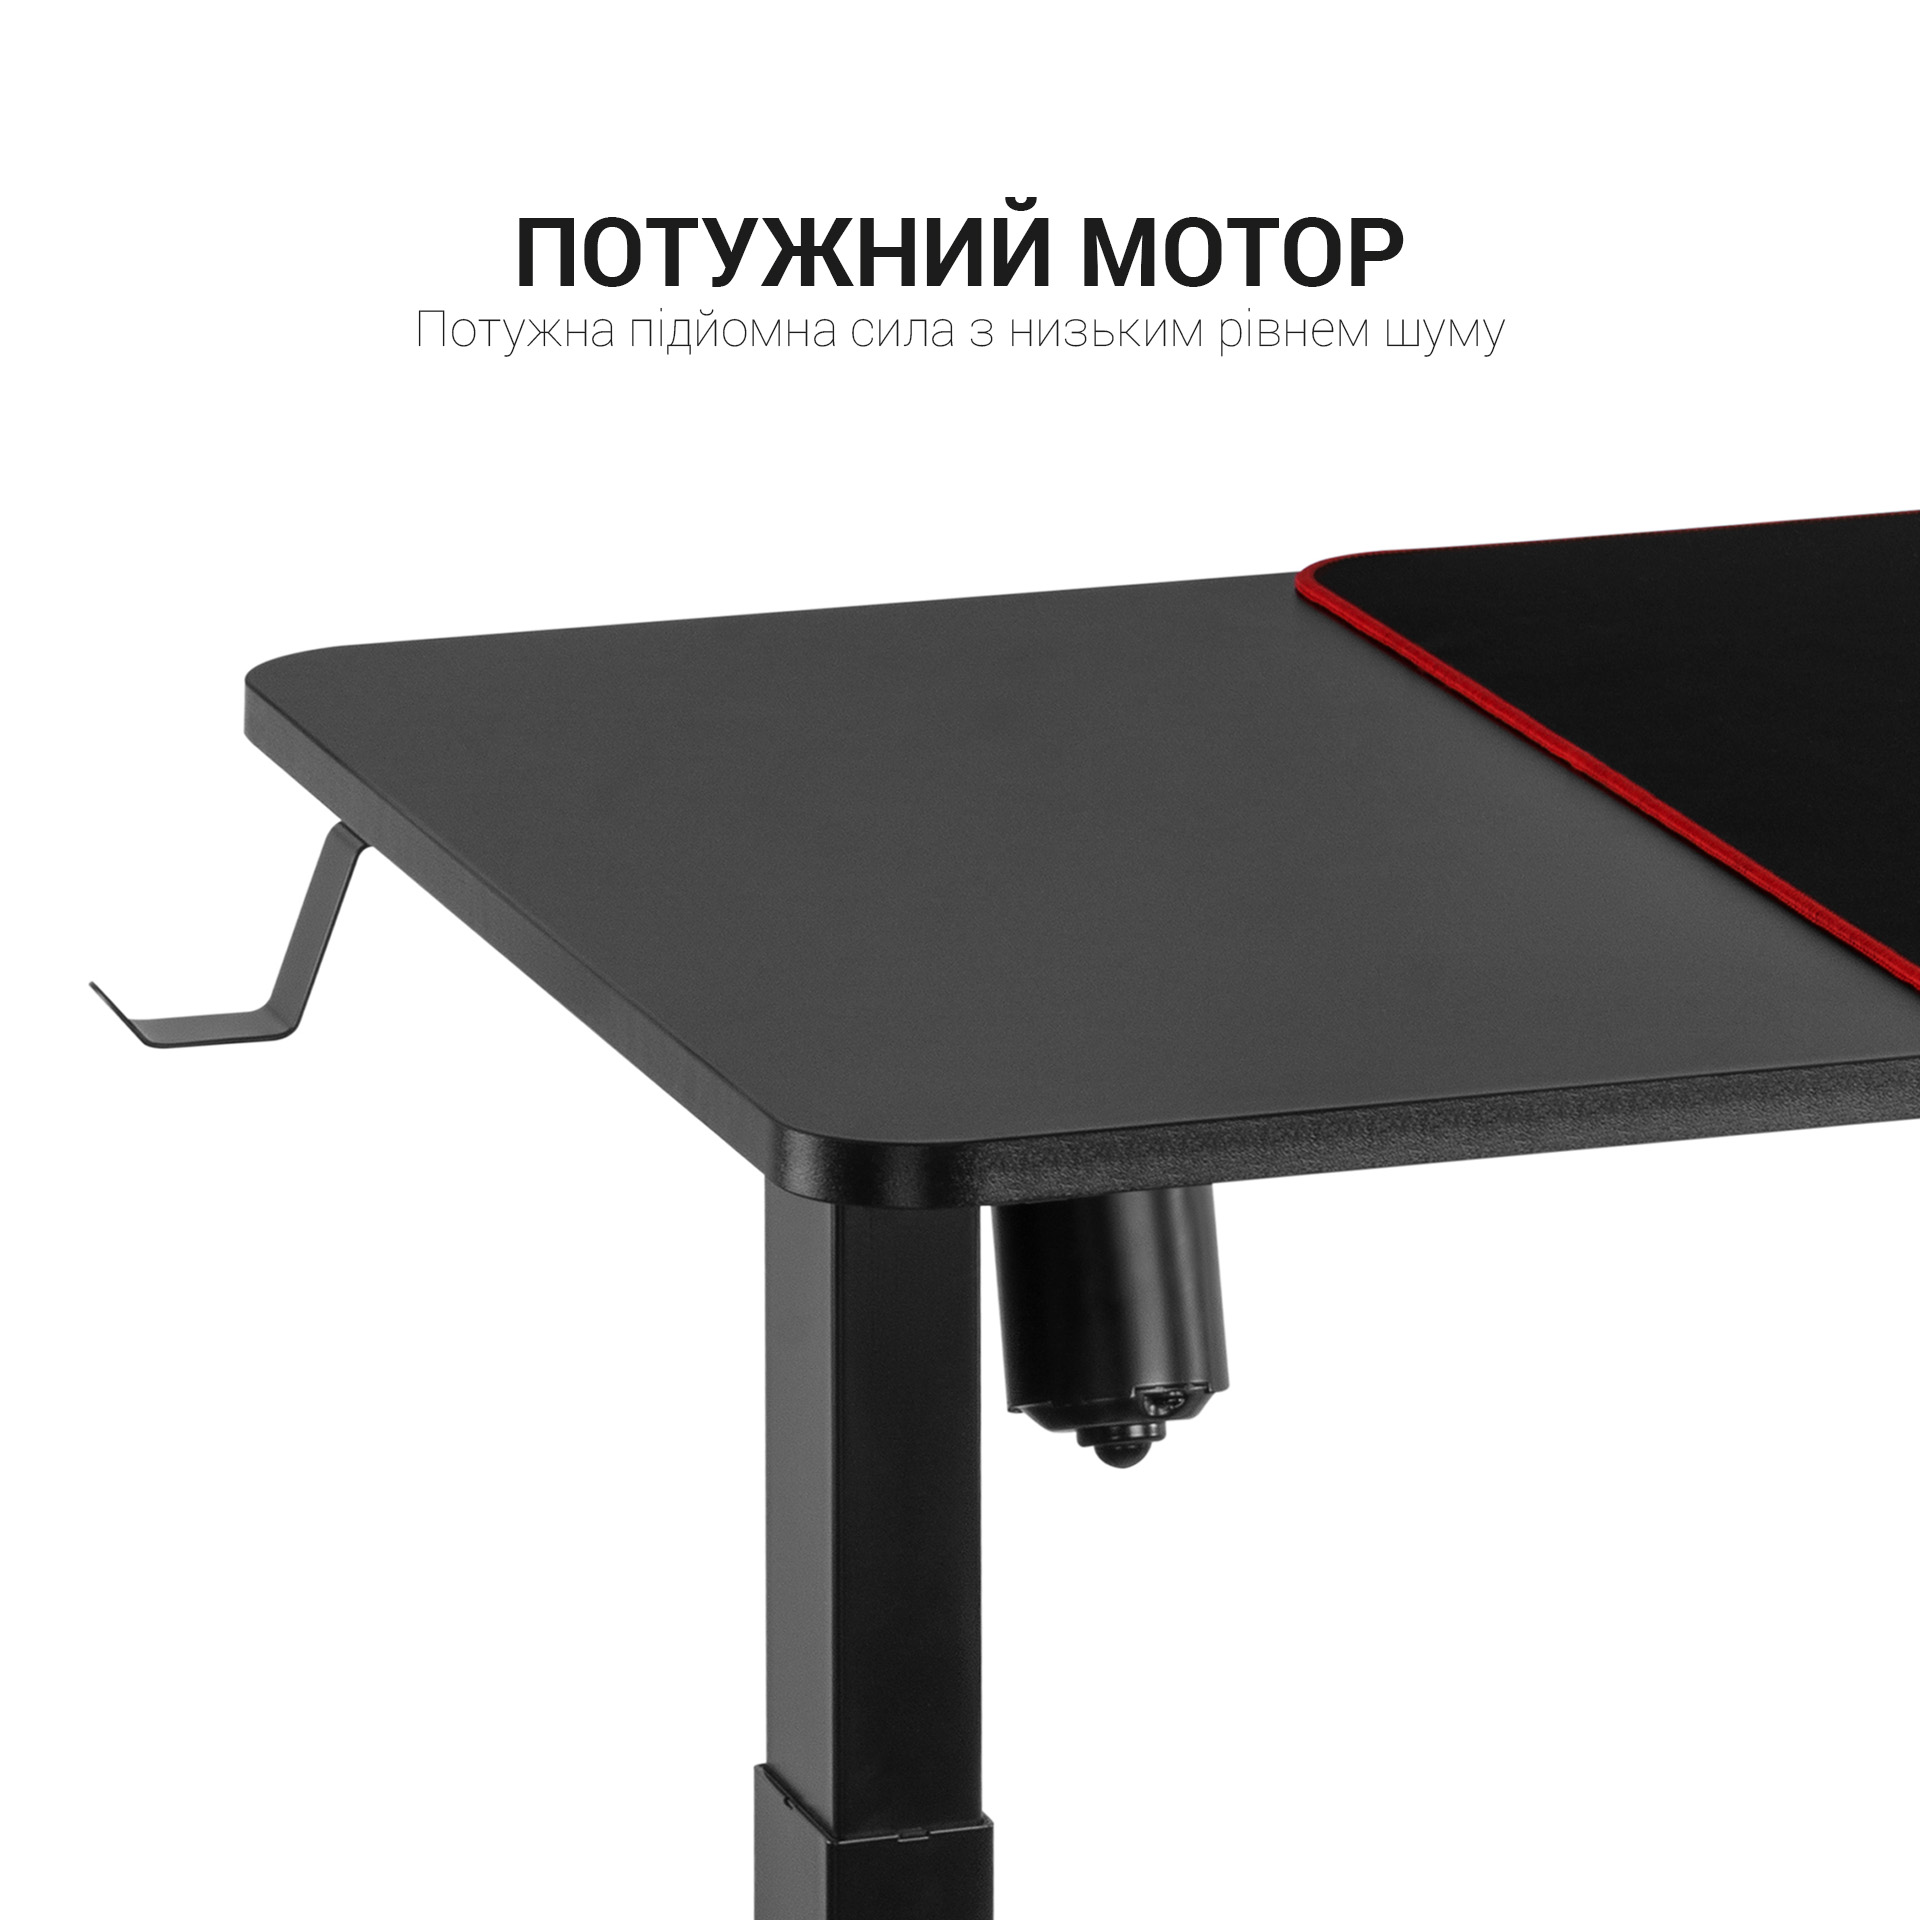 Комп'ютерний стіл OfficePro з електрорегулюванням висоти чорний (ODE514) - фото 6